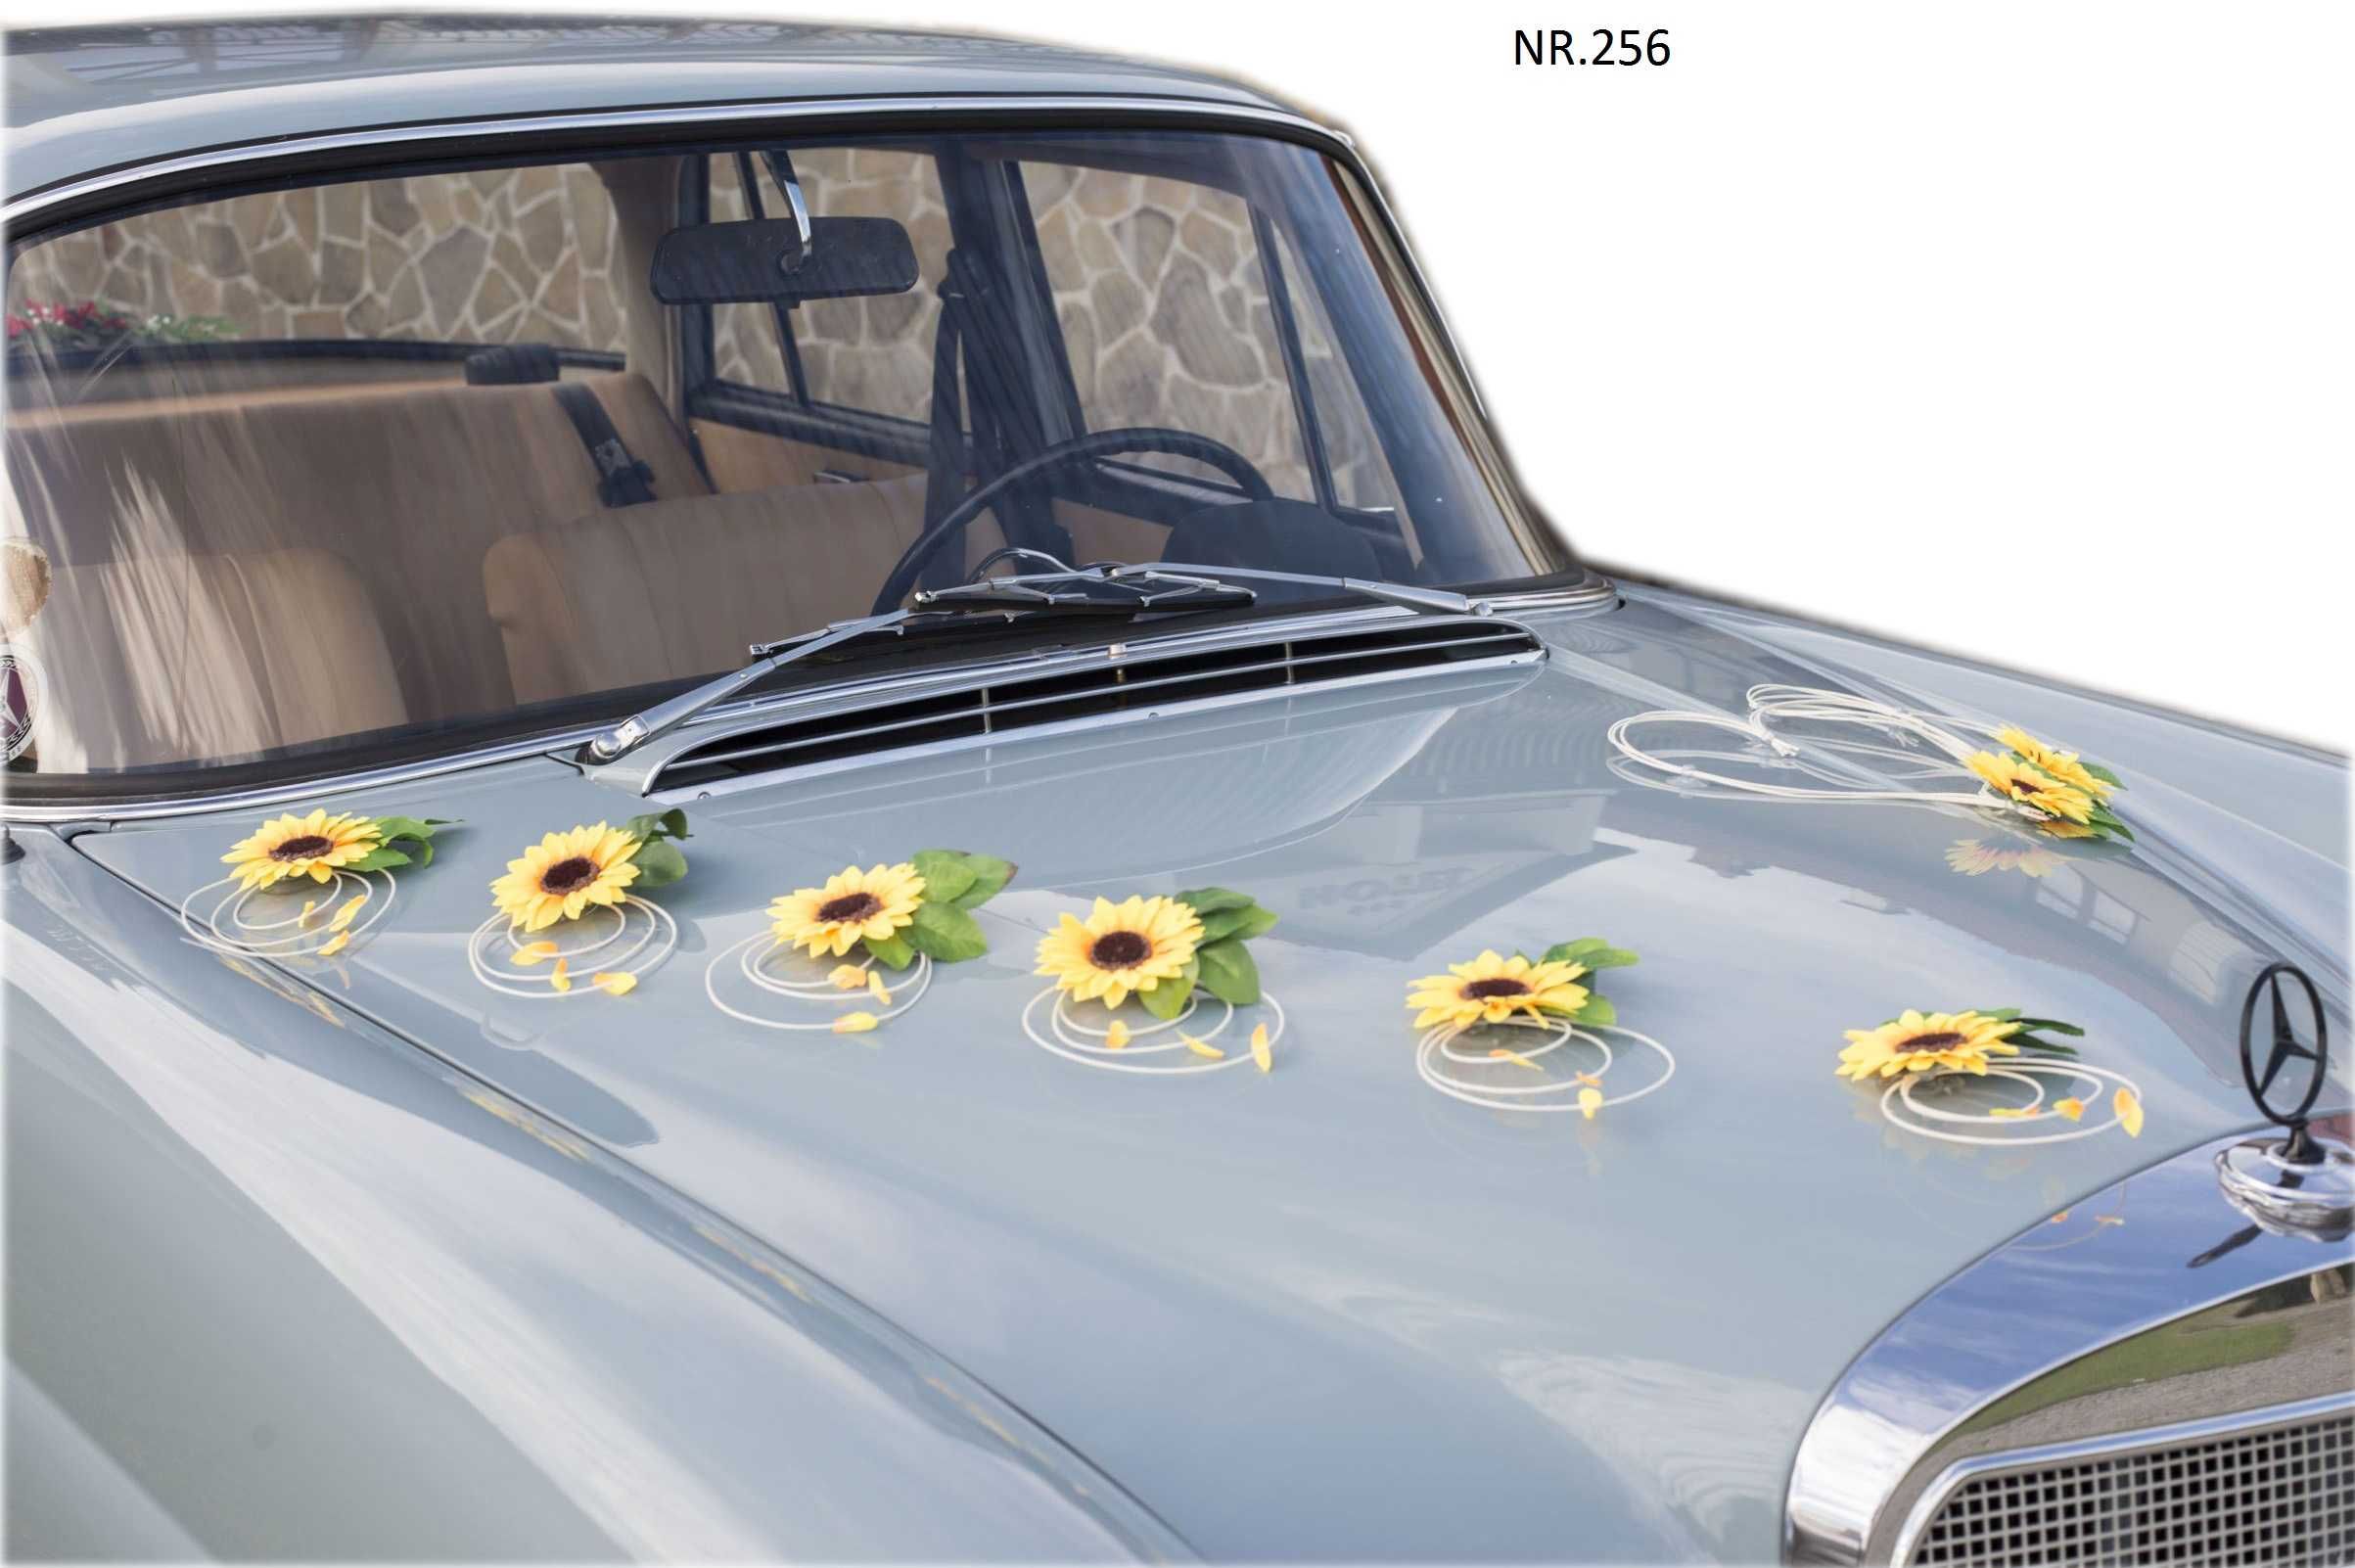 Słoneczniki dekoracja samochodu do ślubu POLECAMY Nr 256